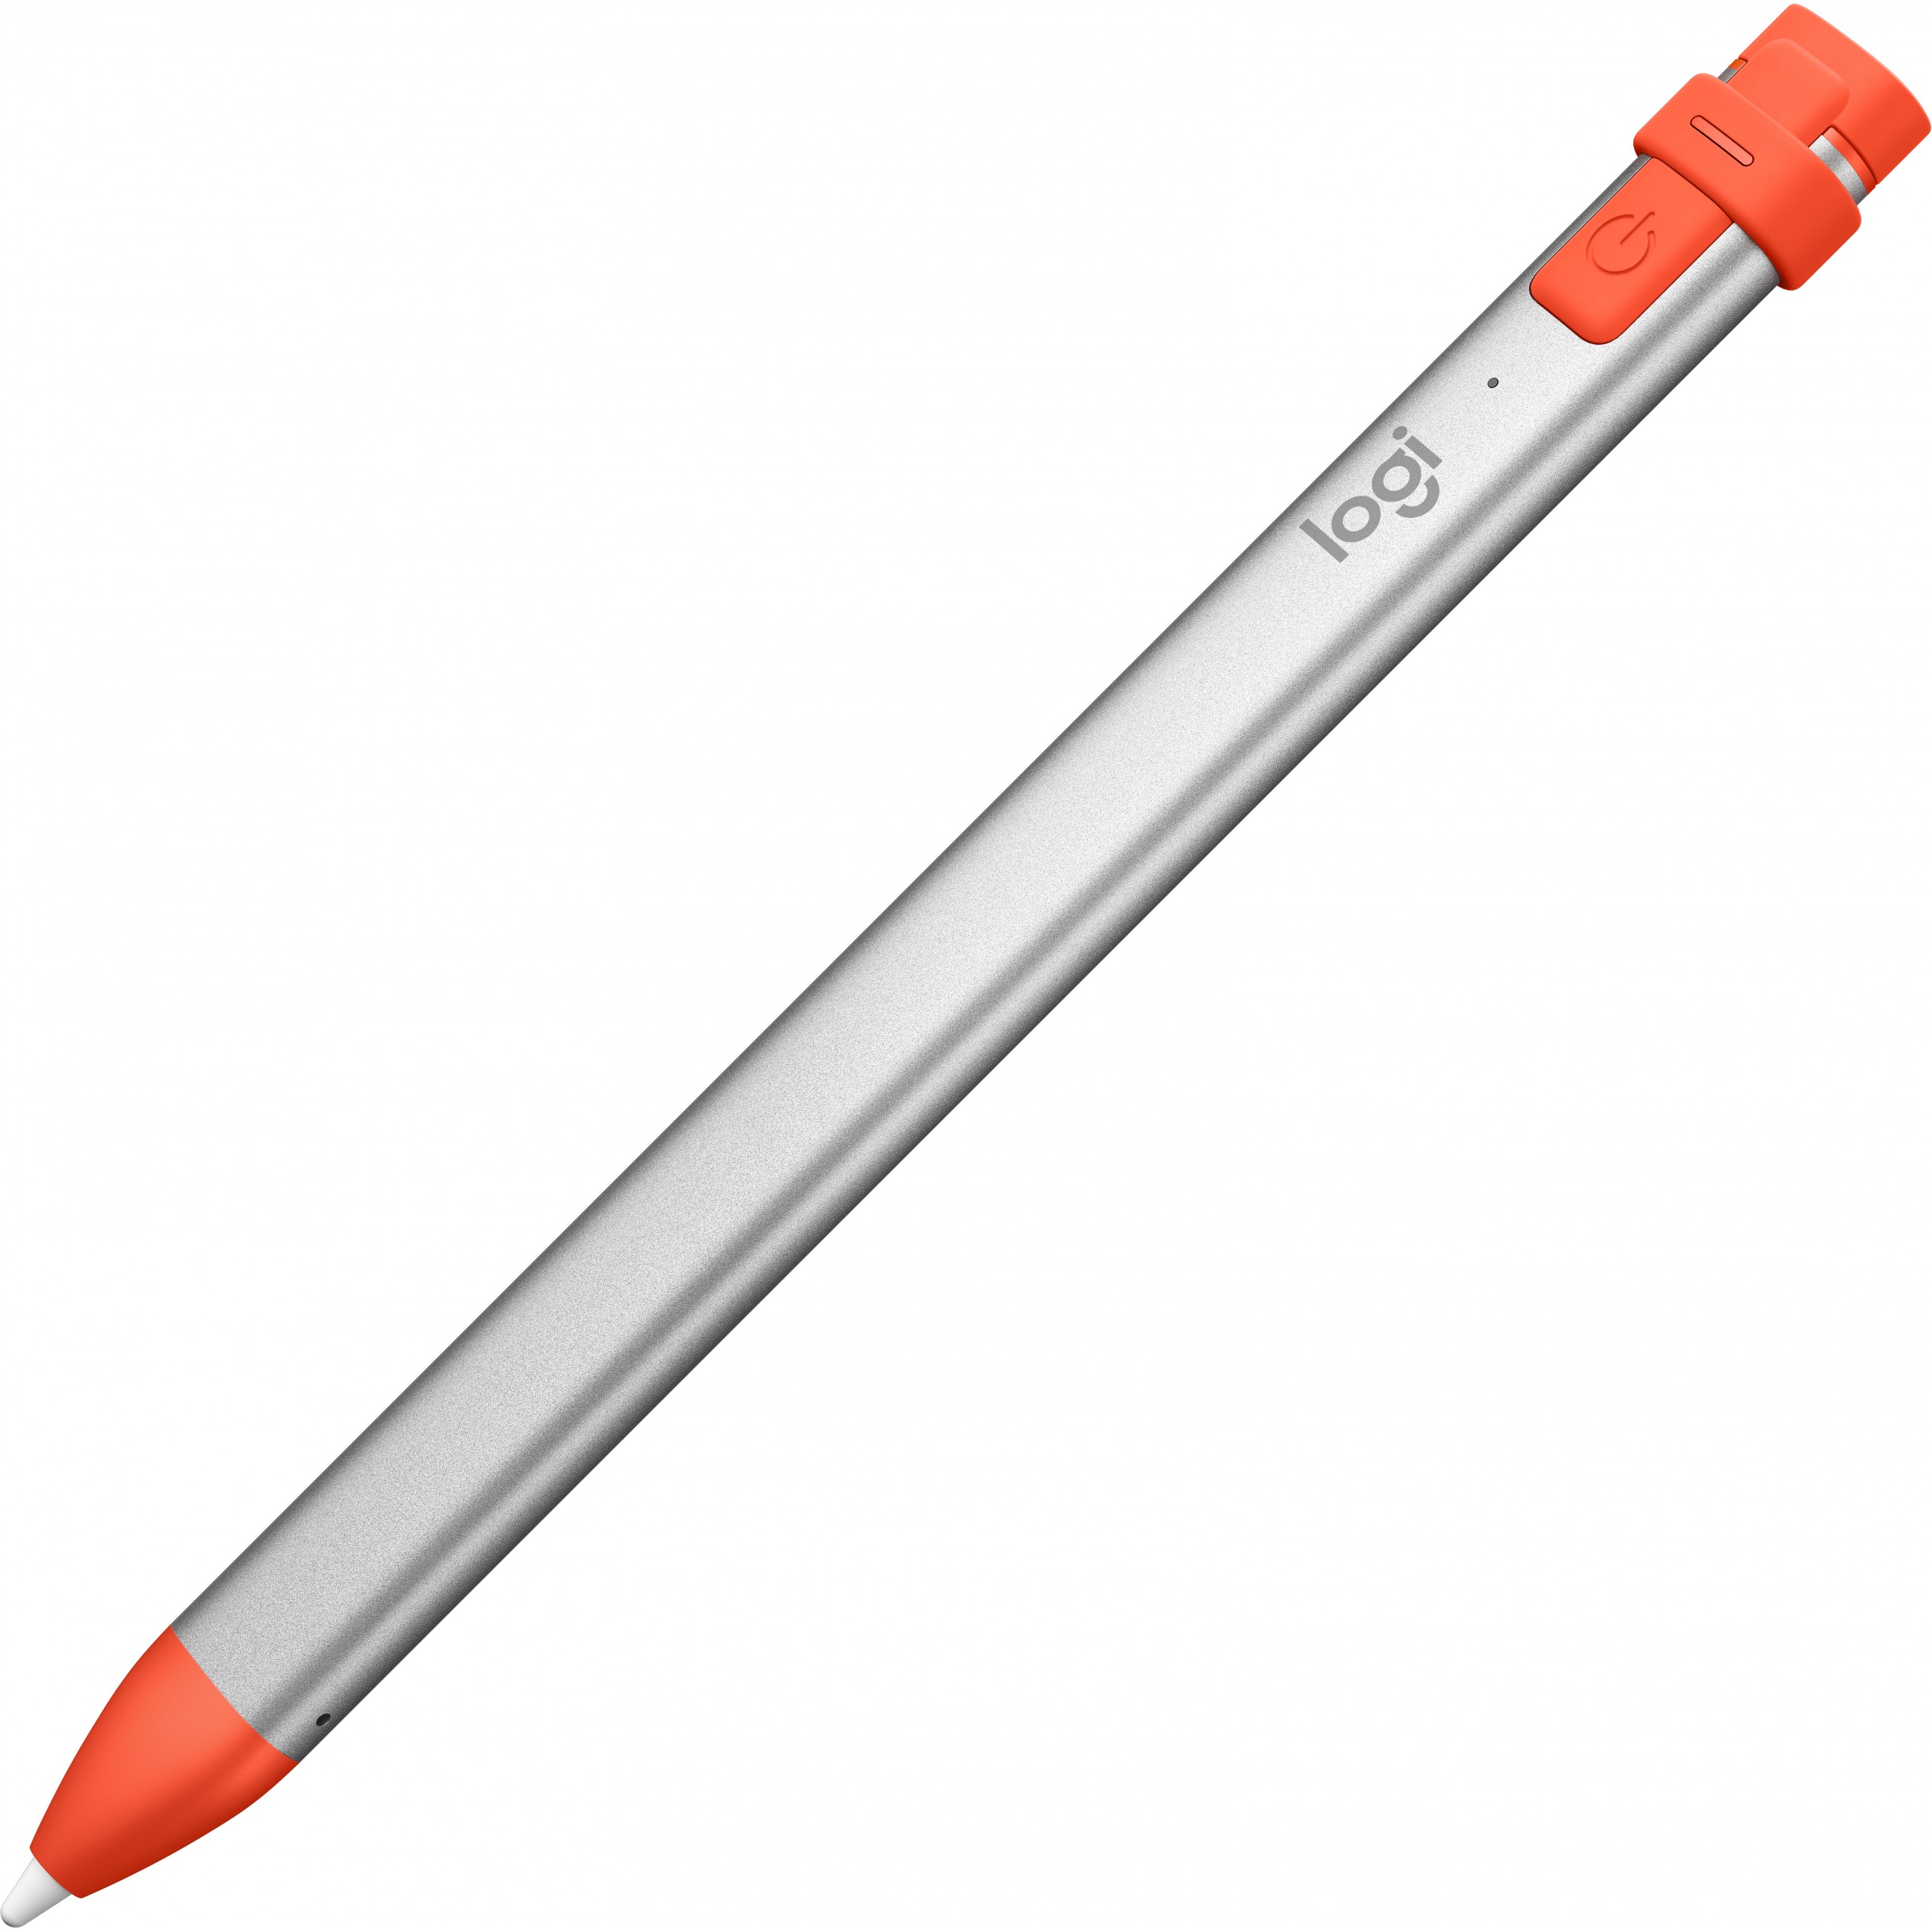 Logitech Crayon stylus pen - 914-000034